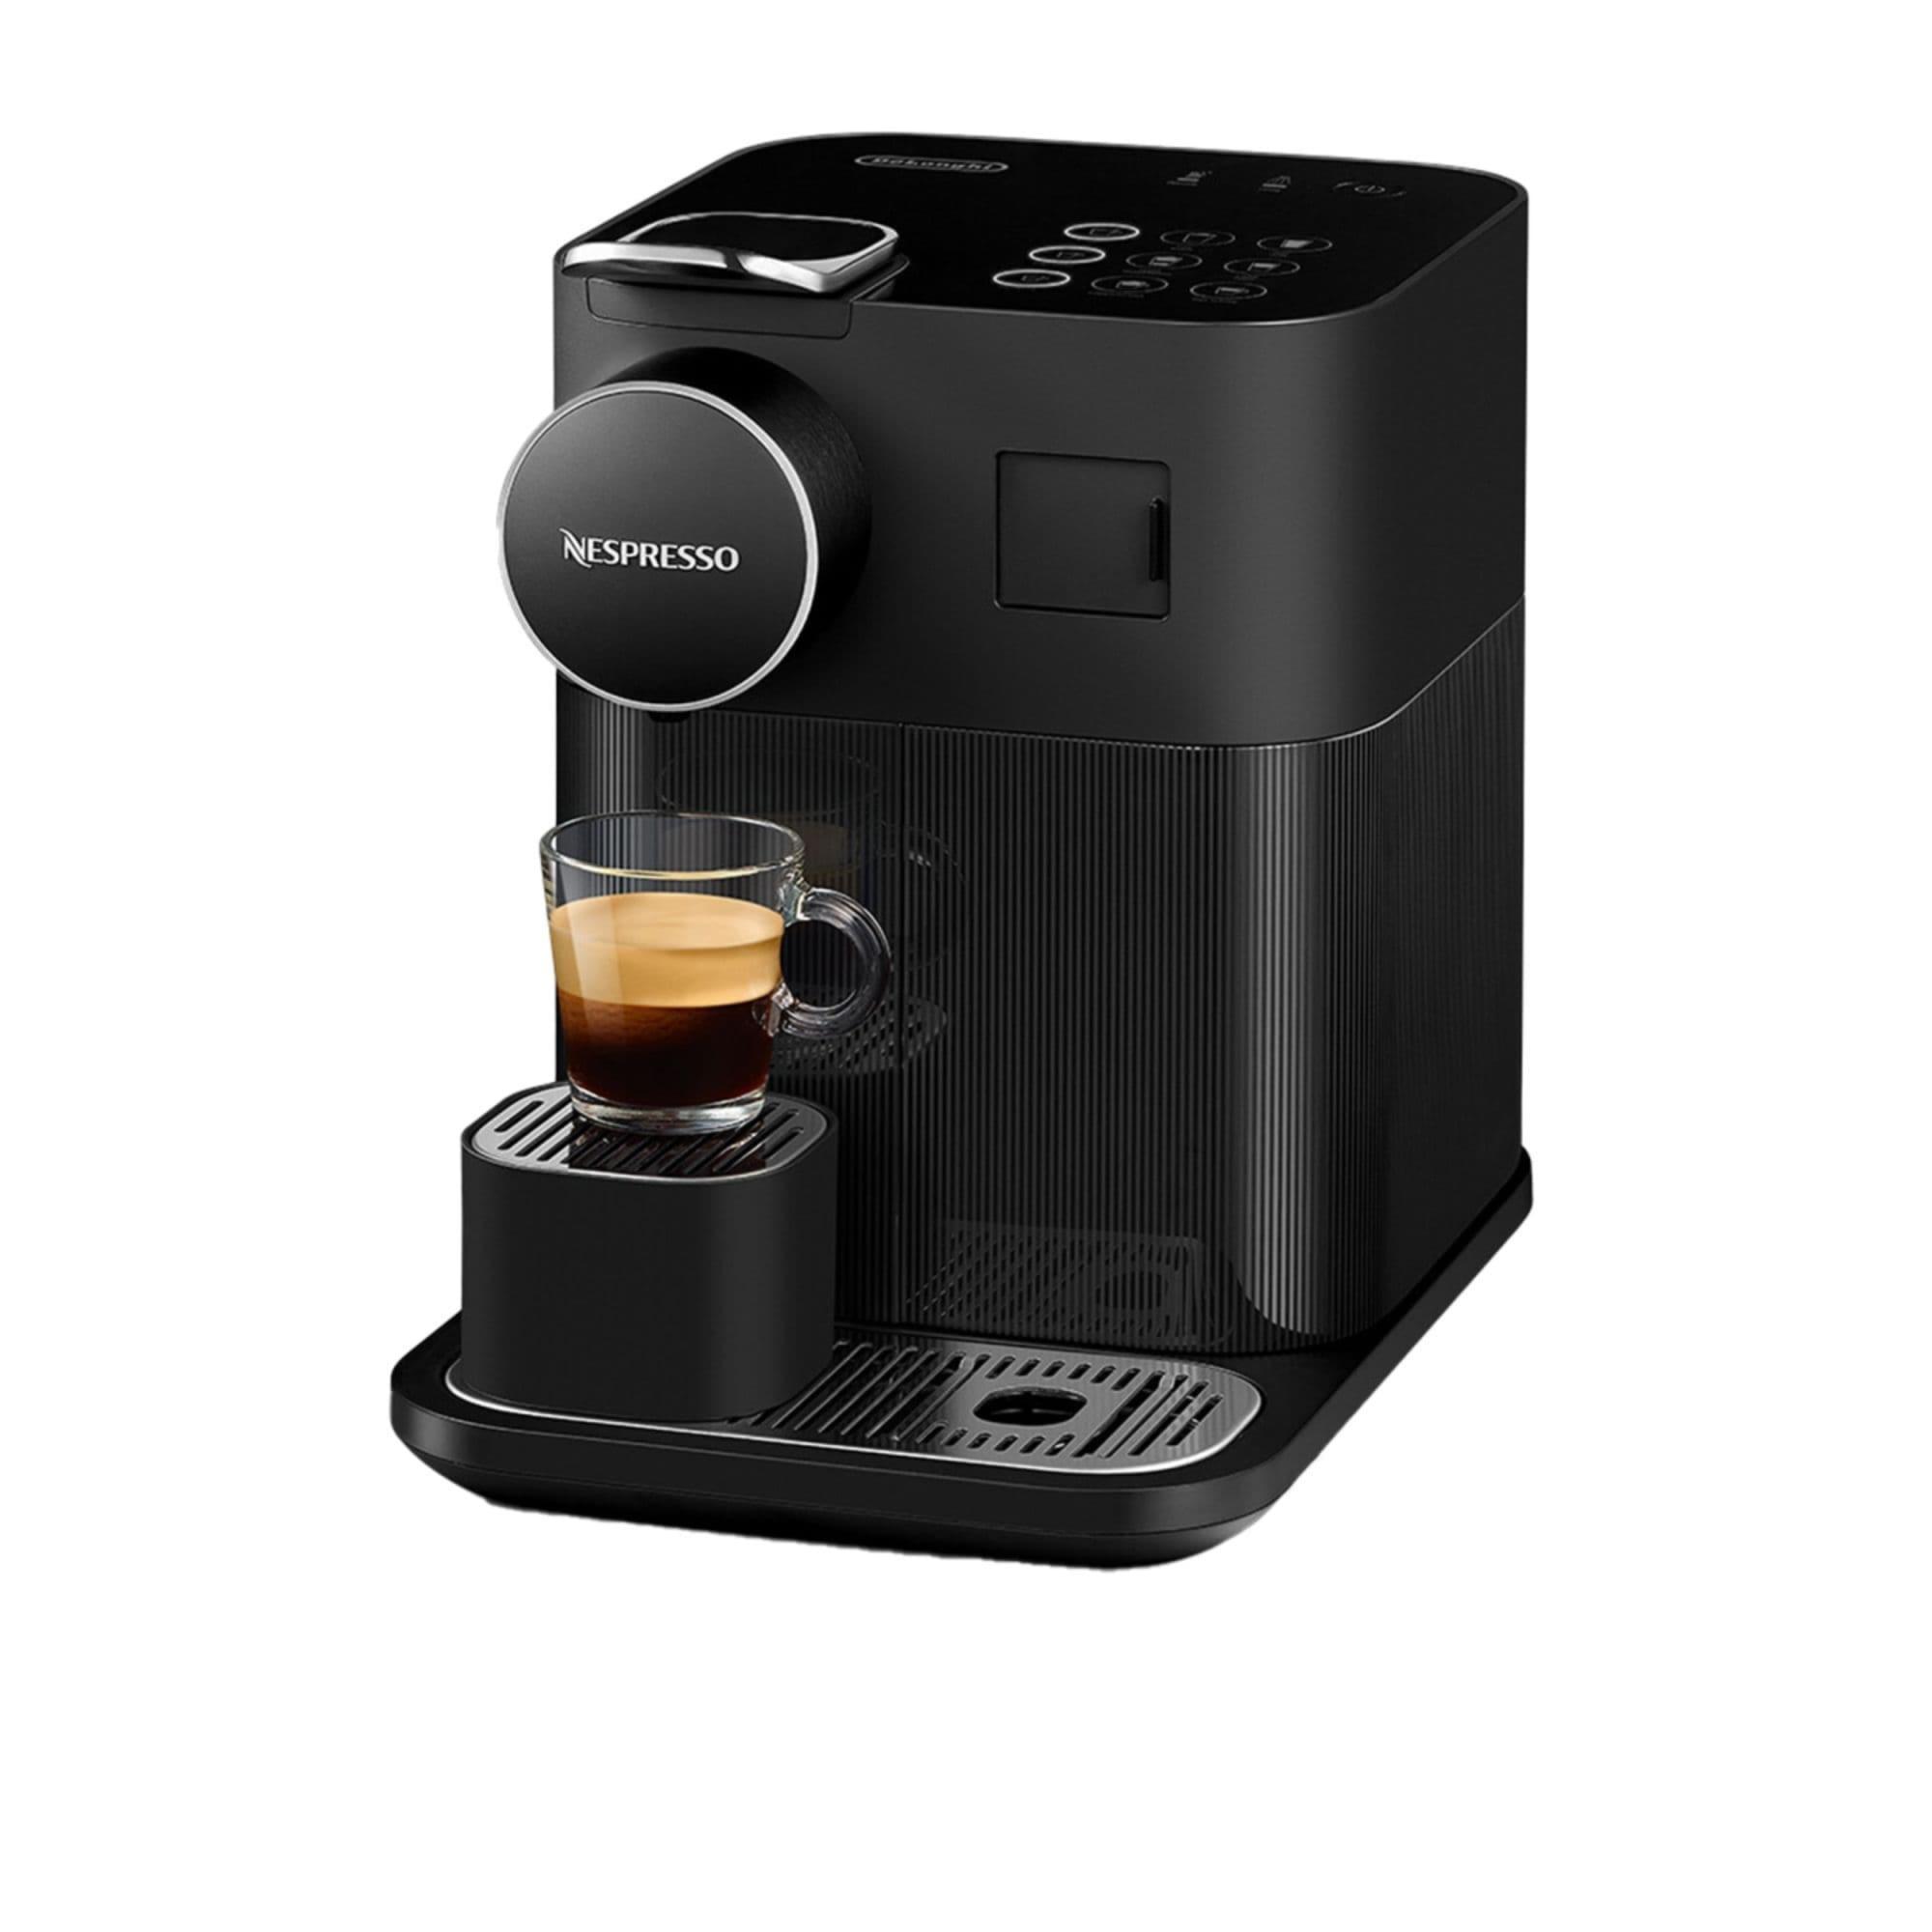 DeLonghi Nespresso Gran Lattisima EN640B Automatic Capsule Coffee Machine Black Image 6